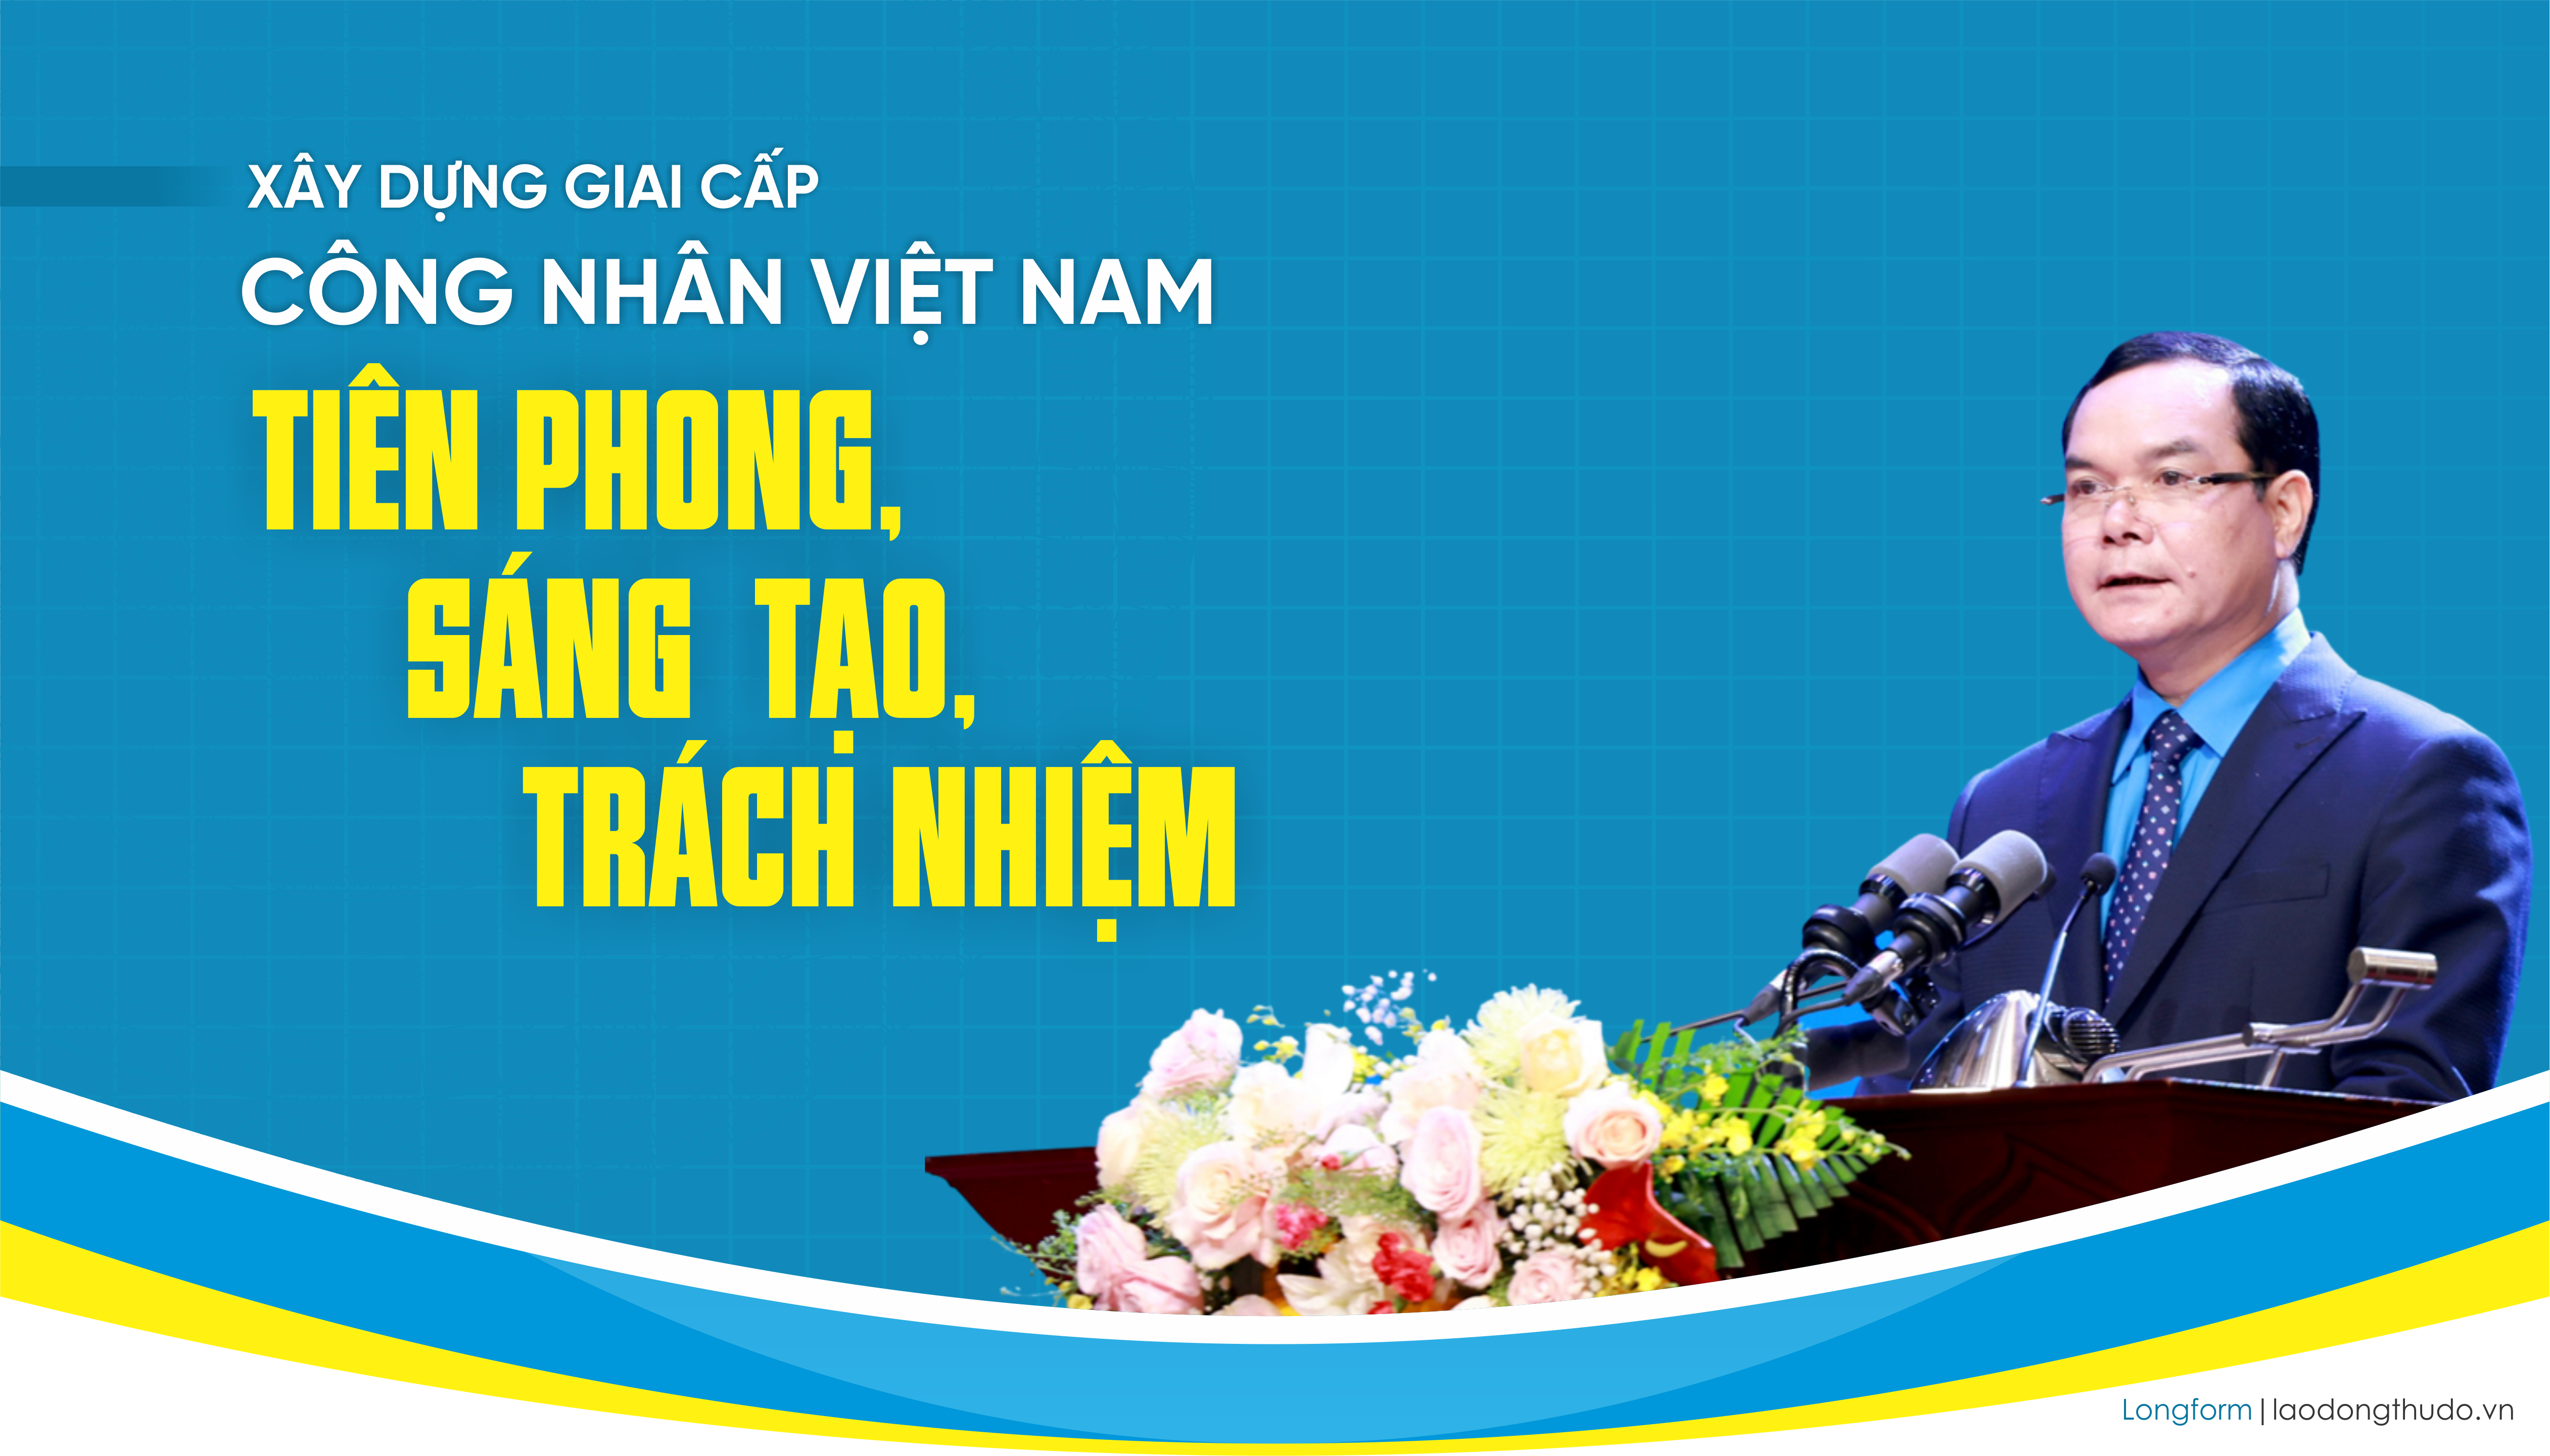 Xây dựng giai cấp công nhân Việt Nam tiên phong, sáng tạo, trách nhiệm